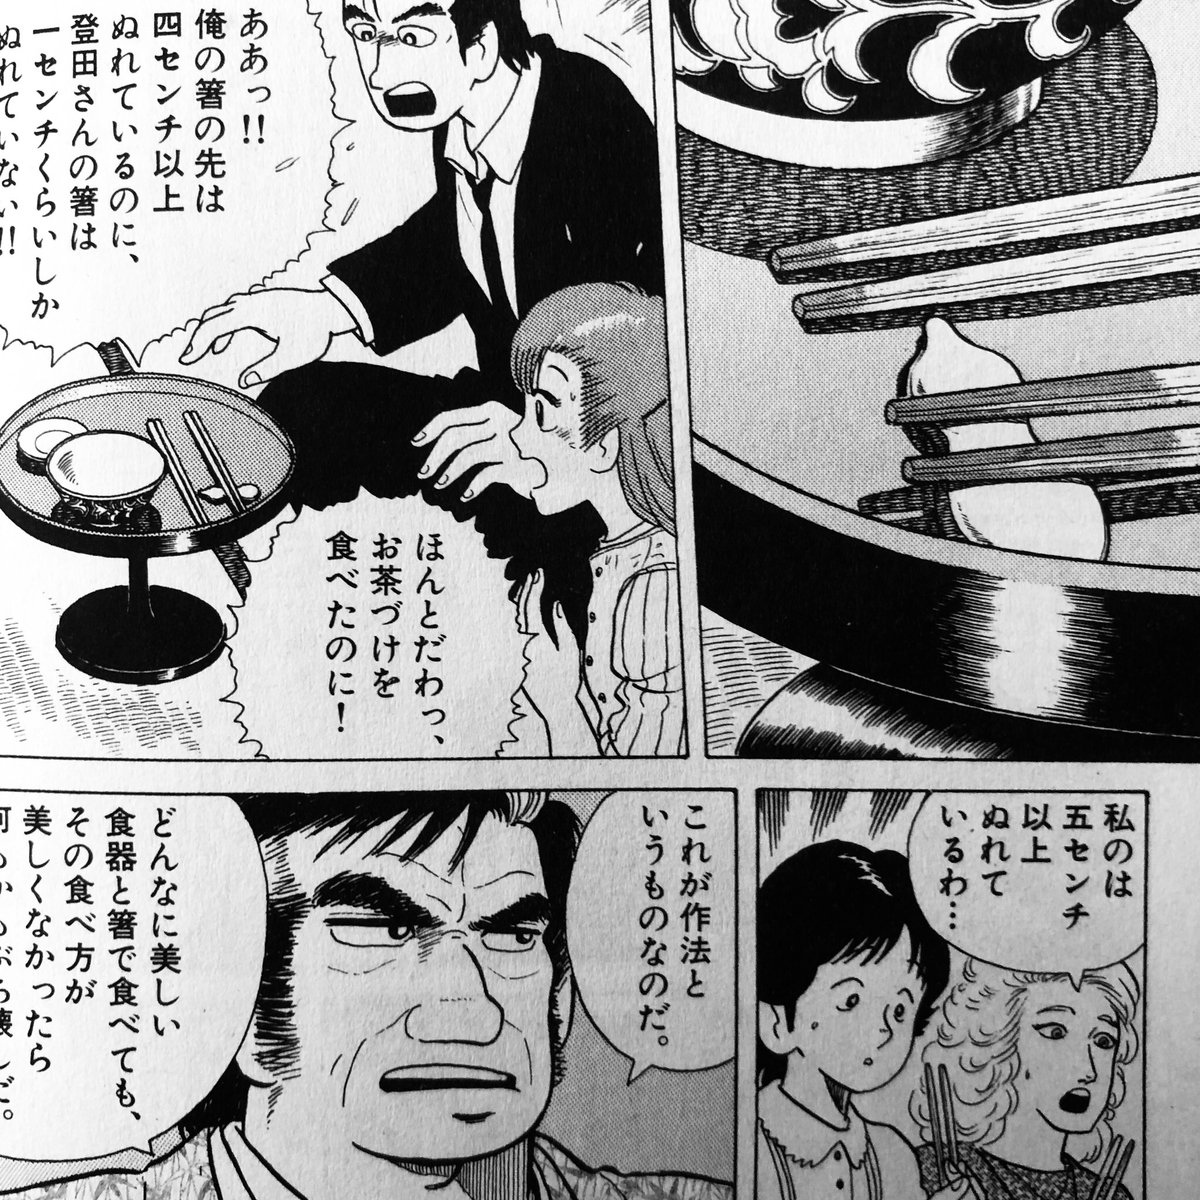 Shimako 66巻で辰さんの本名が明らかになる話は好きです 辰さん 好きなんで 後期 も出てくれて嬉しいです ジェフとブラックさん 同じくらいの比重だと思っていたら 完全にブラックさんがレギュラーになっちゃいましたね